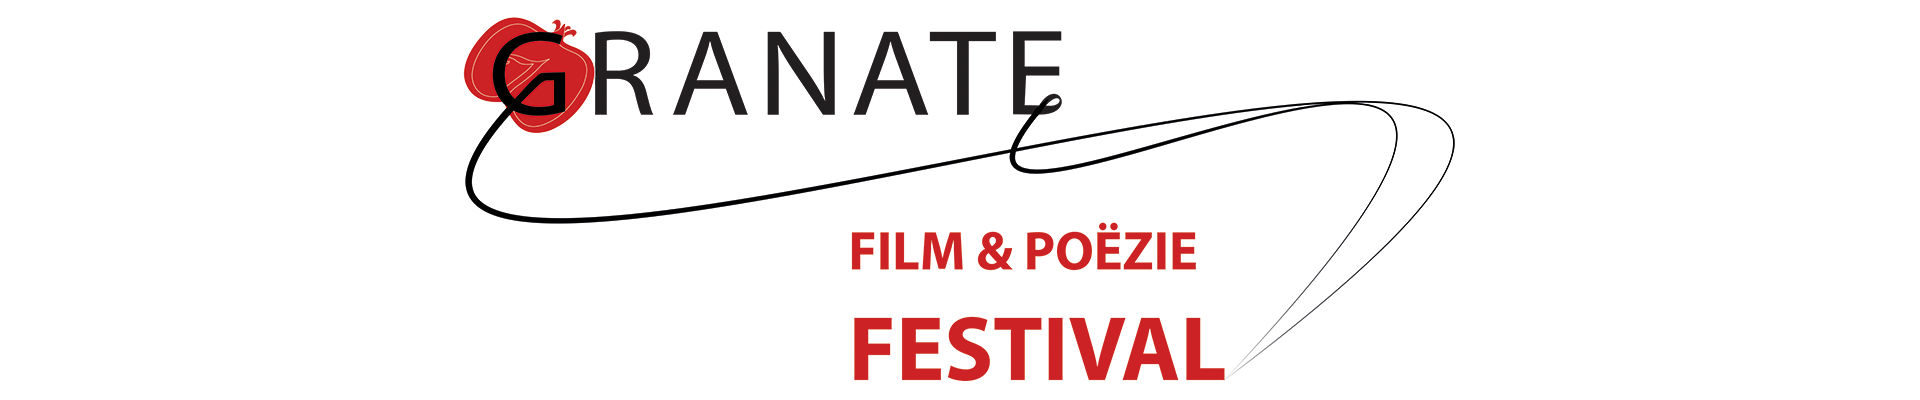 Granate Festival 2019